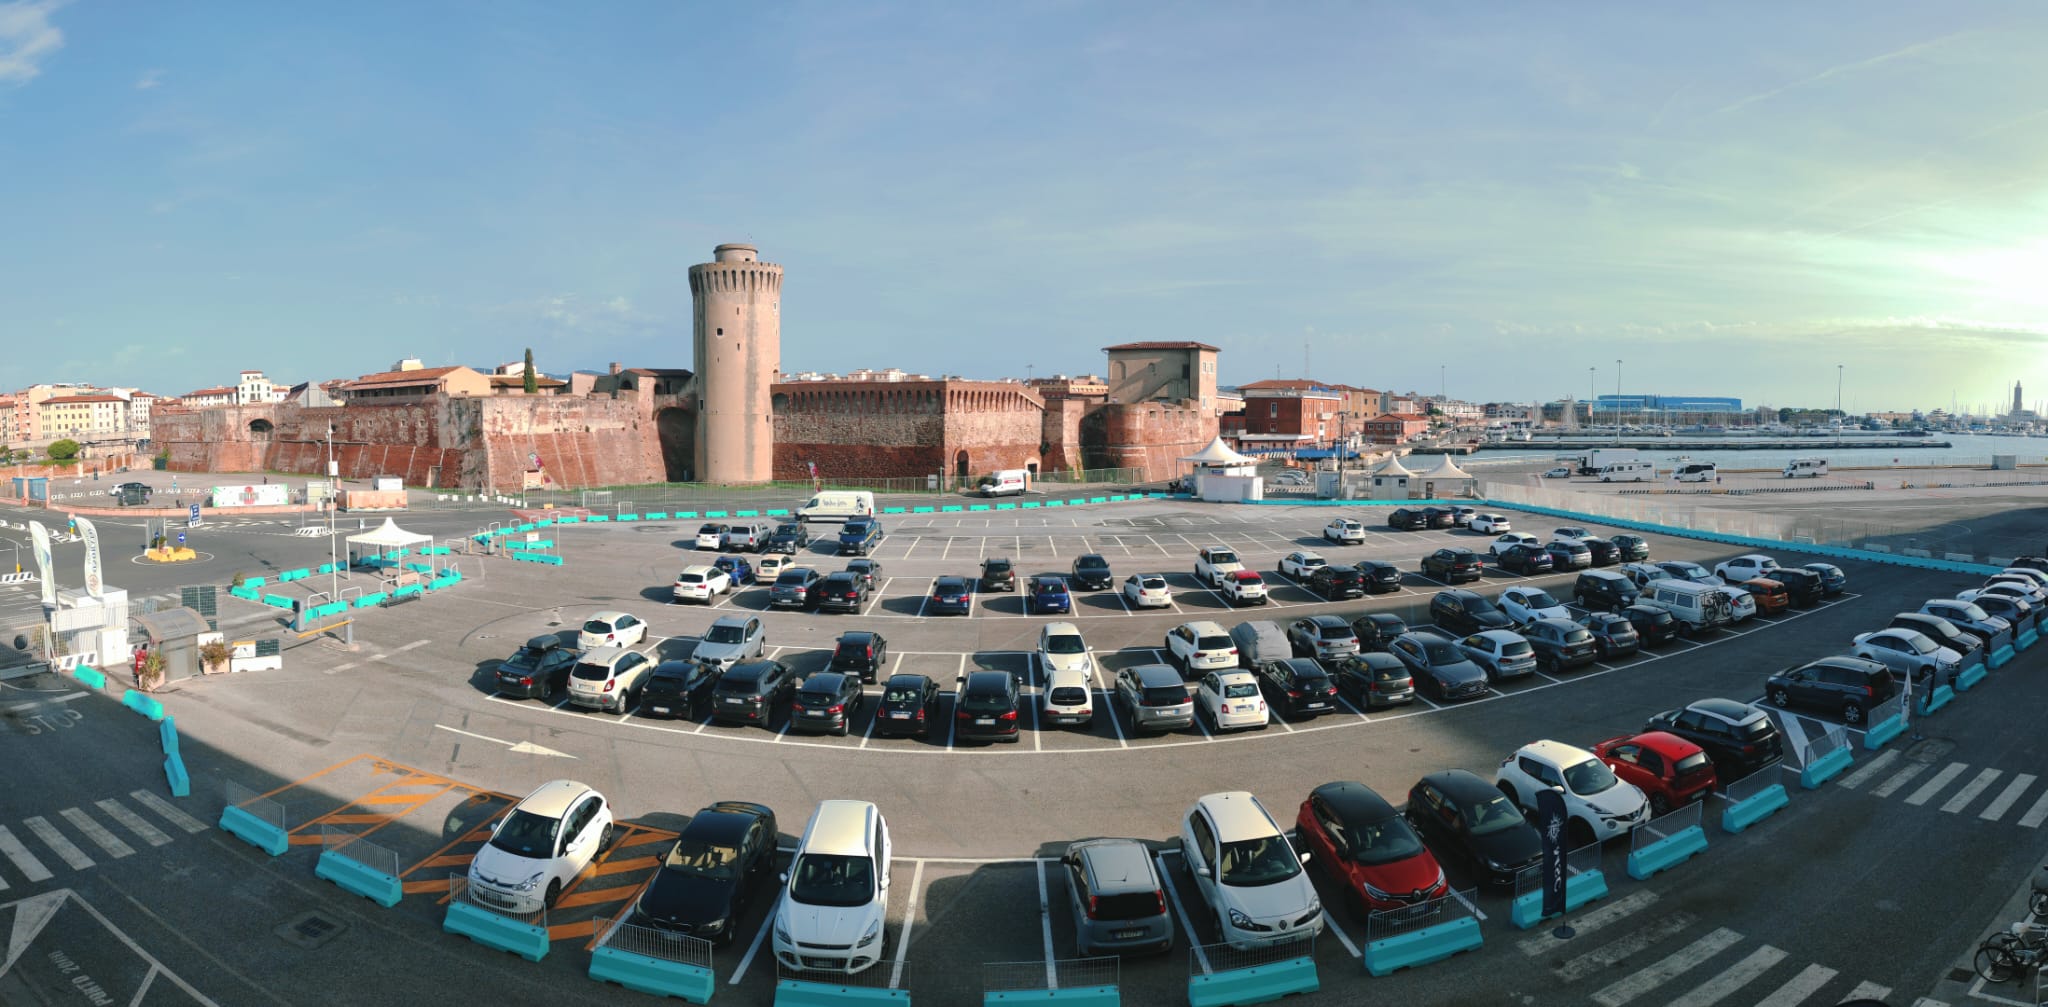 Cruise Terminal Parking